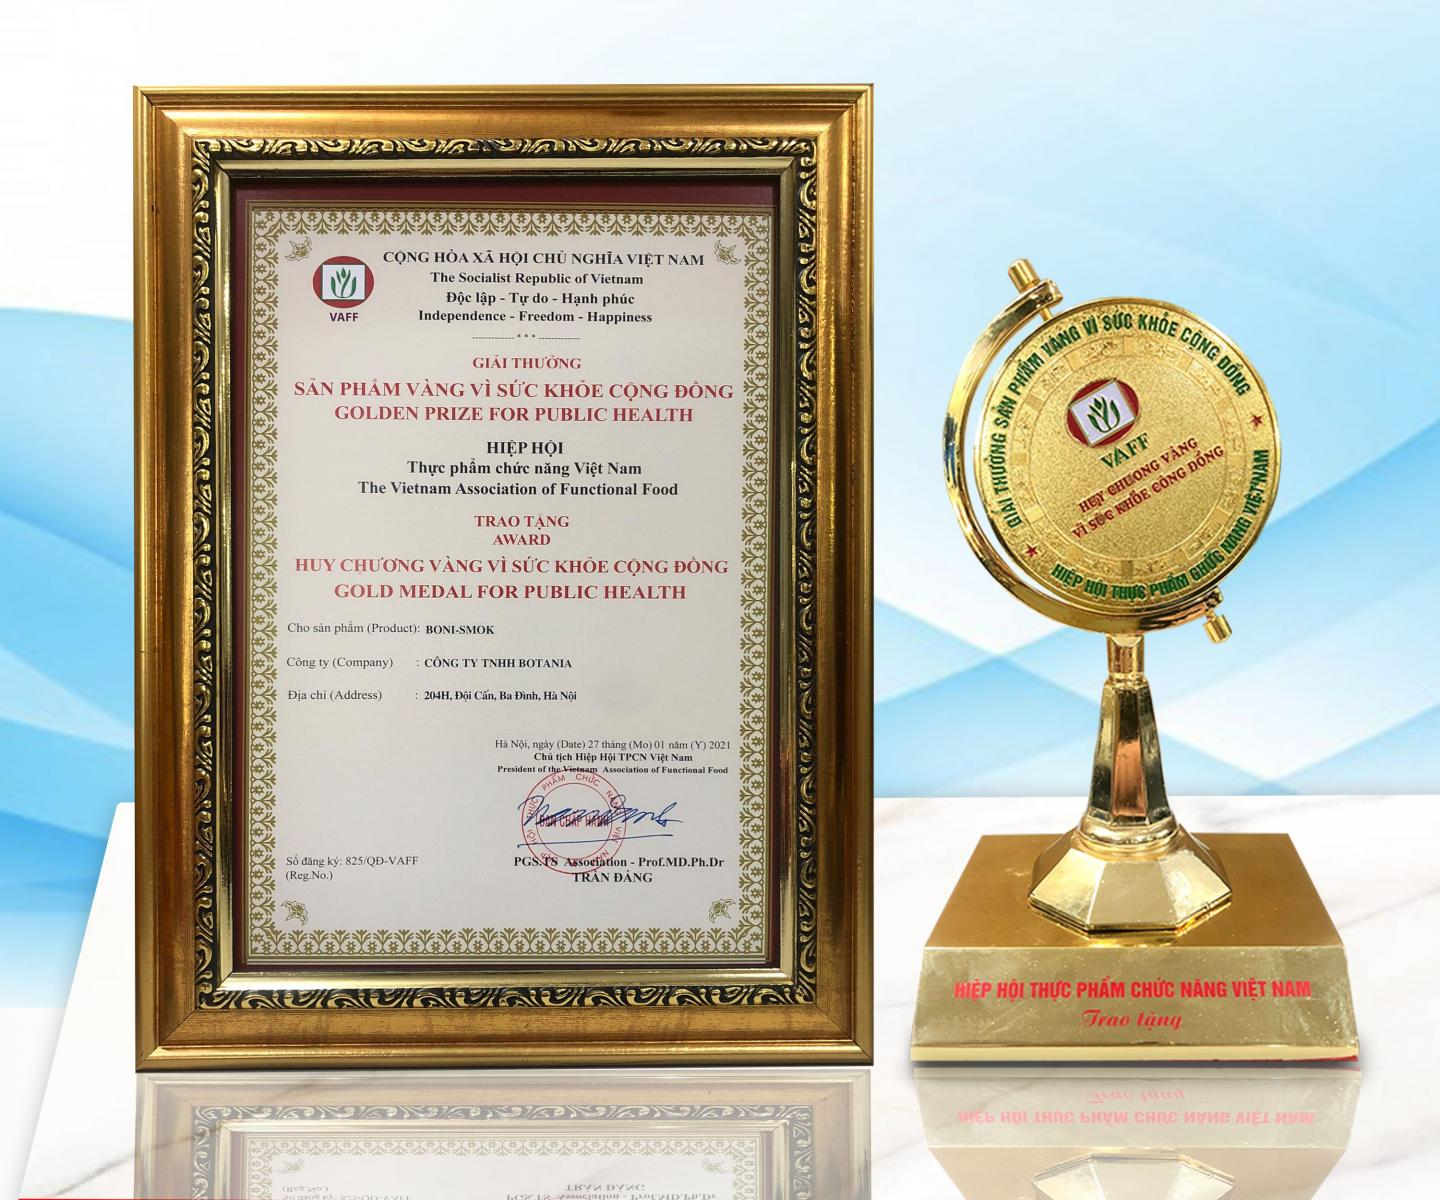 Cúp giải thưởng: “Sản phẩm vàng vì sức khỏe cộng đồng”